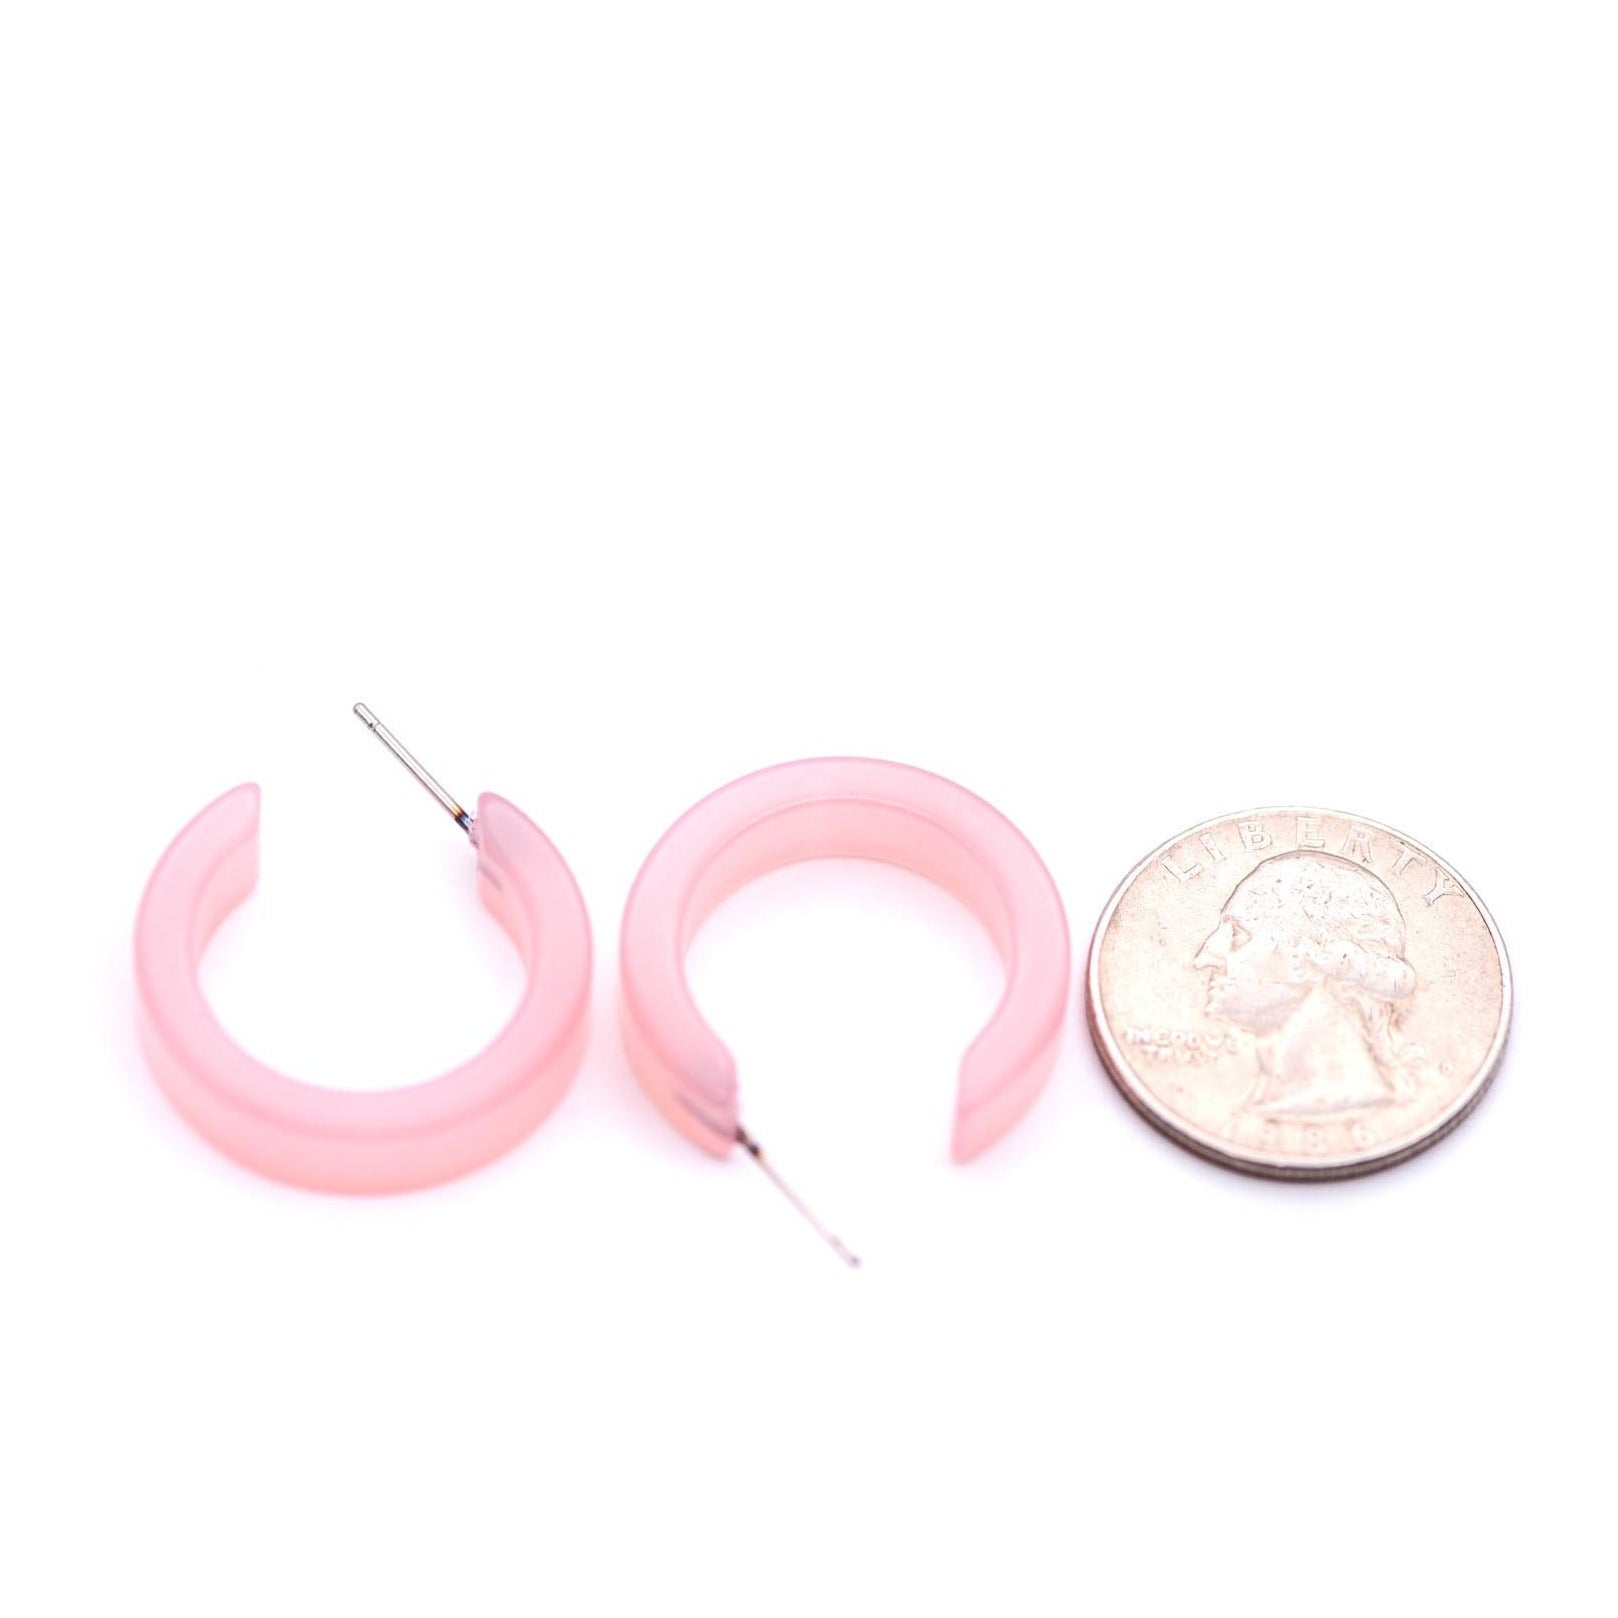 pink moonglow earrings